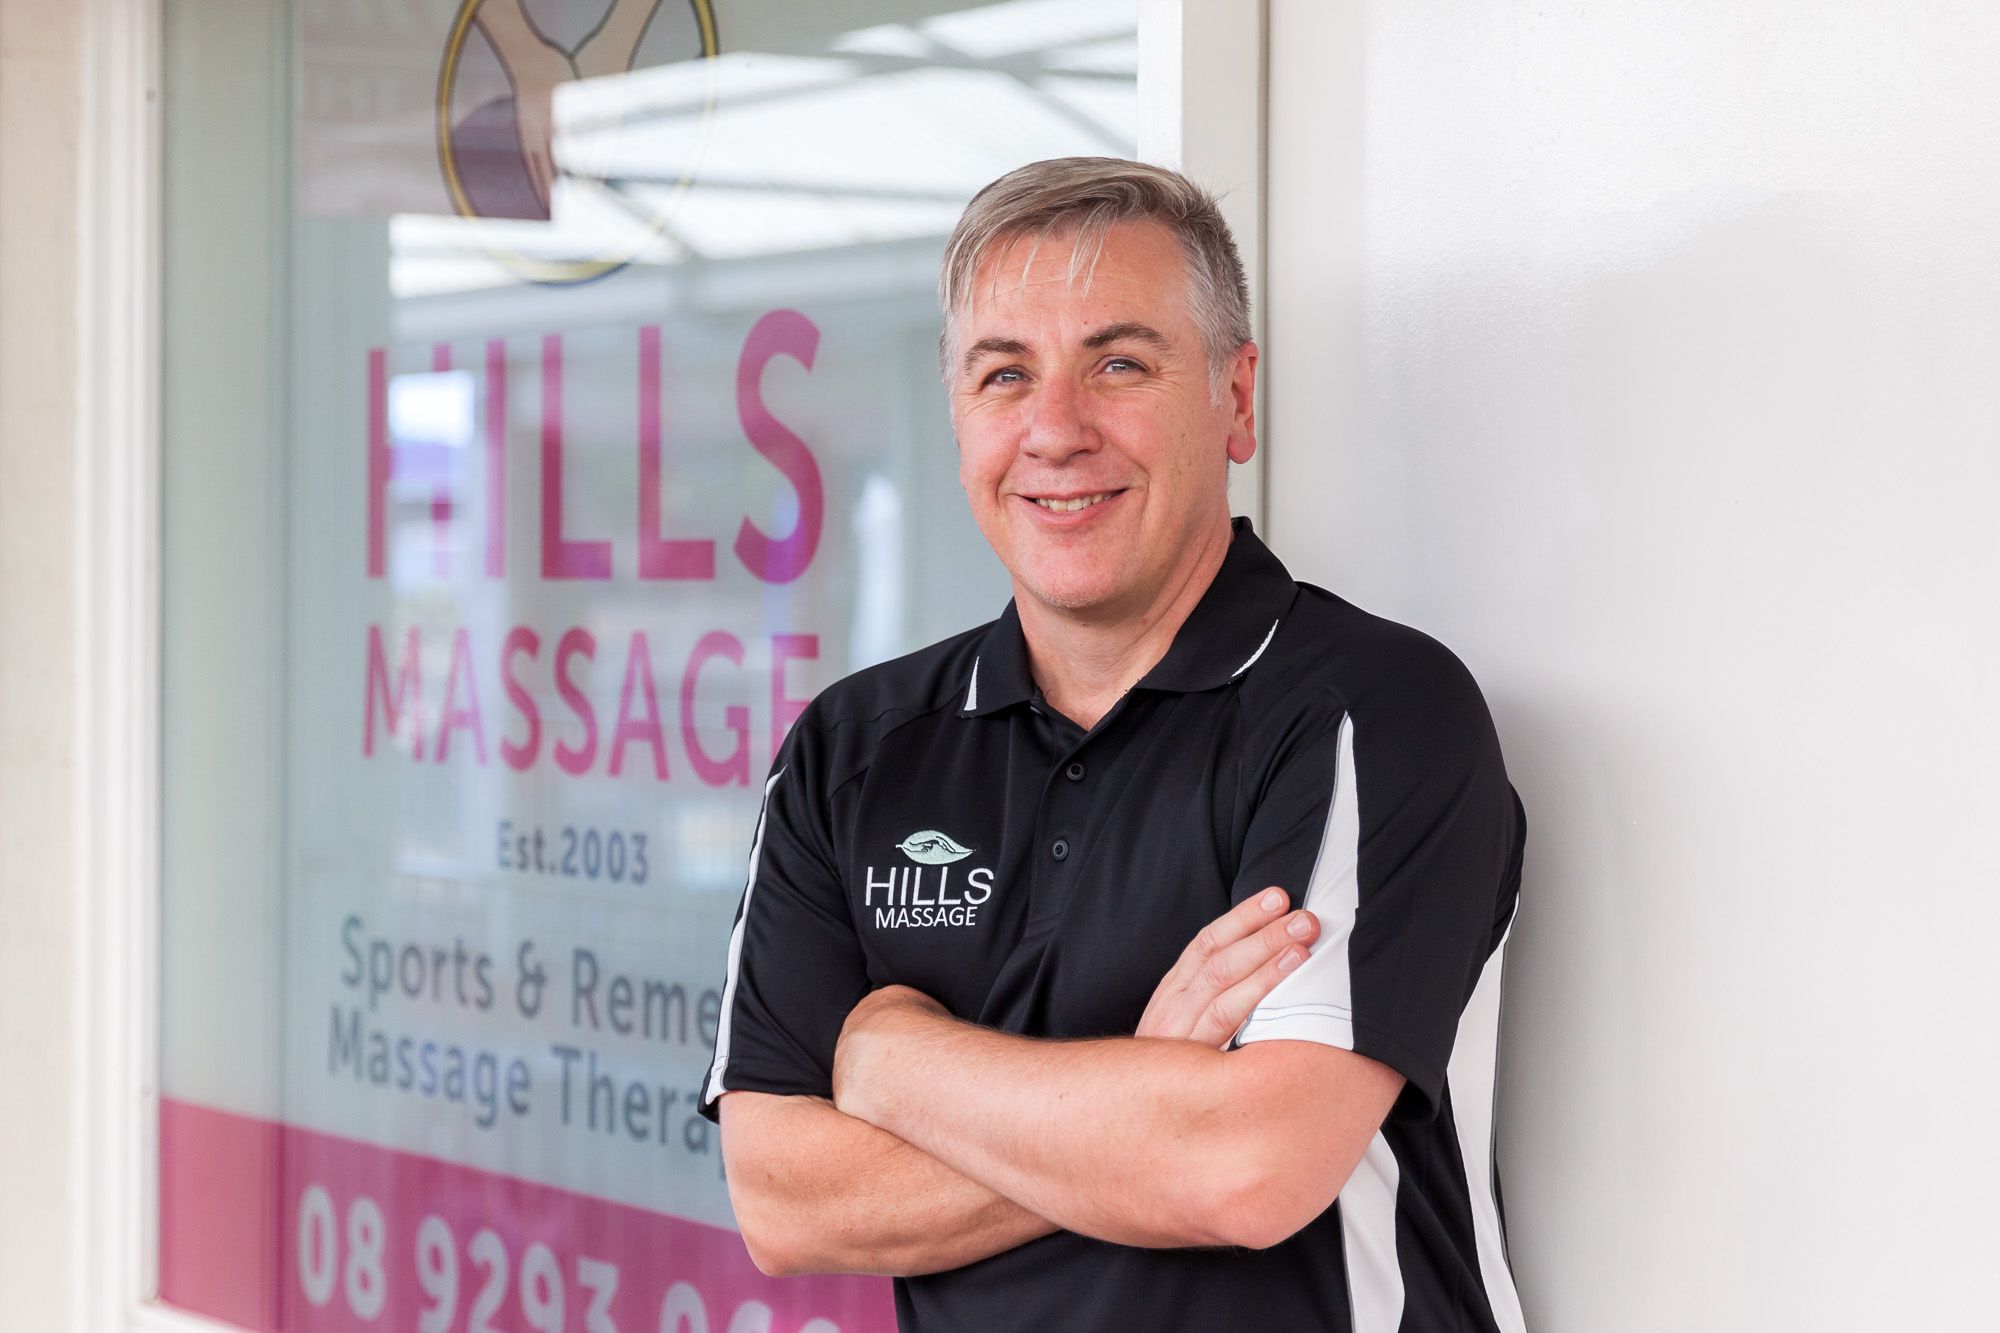 Hills Massage practice manager, Alec Rimmer.